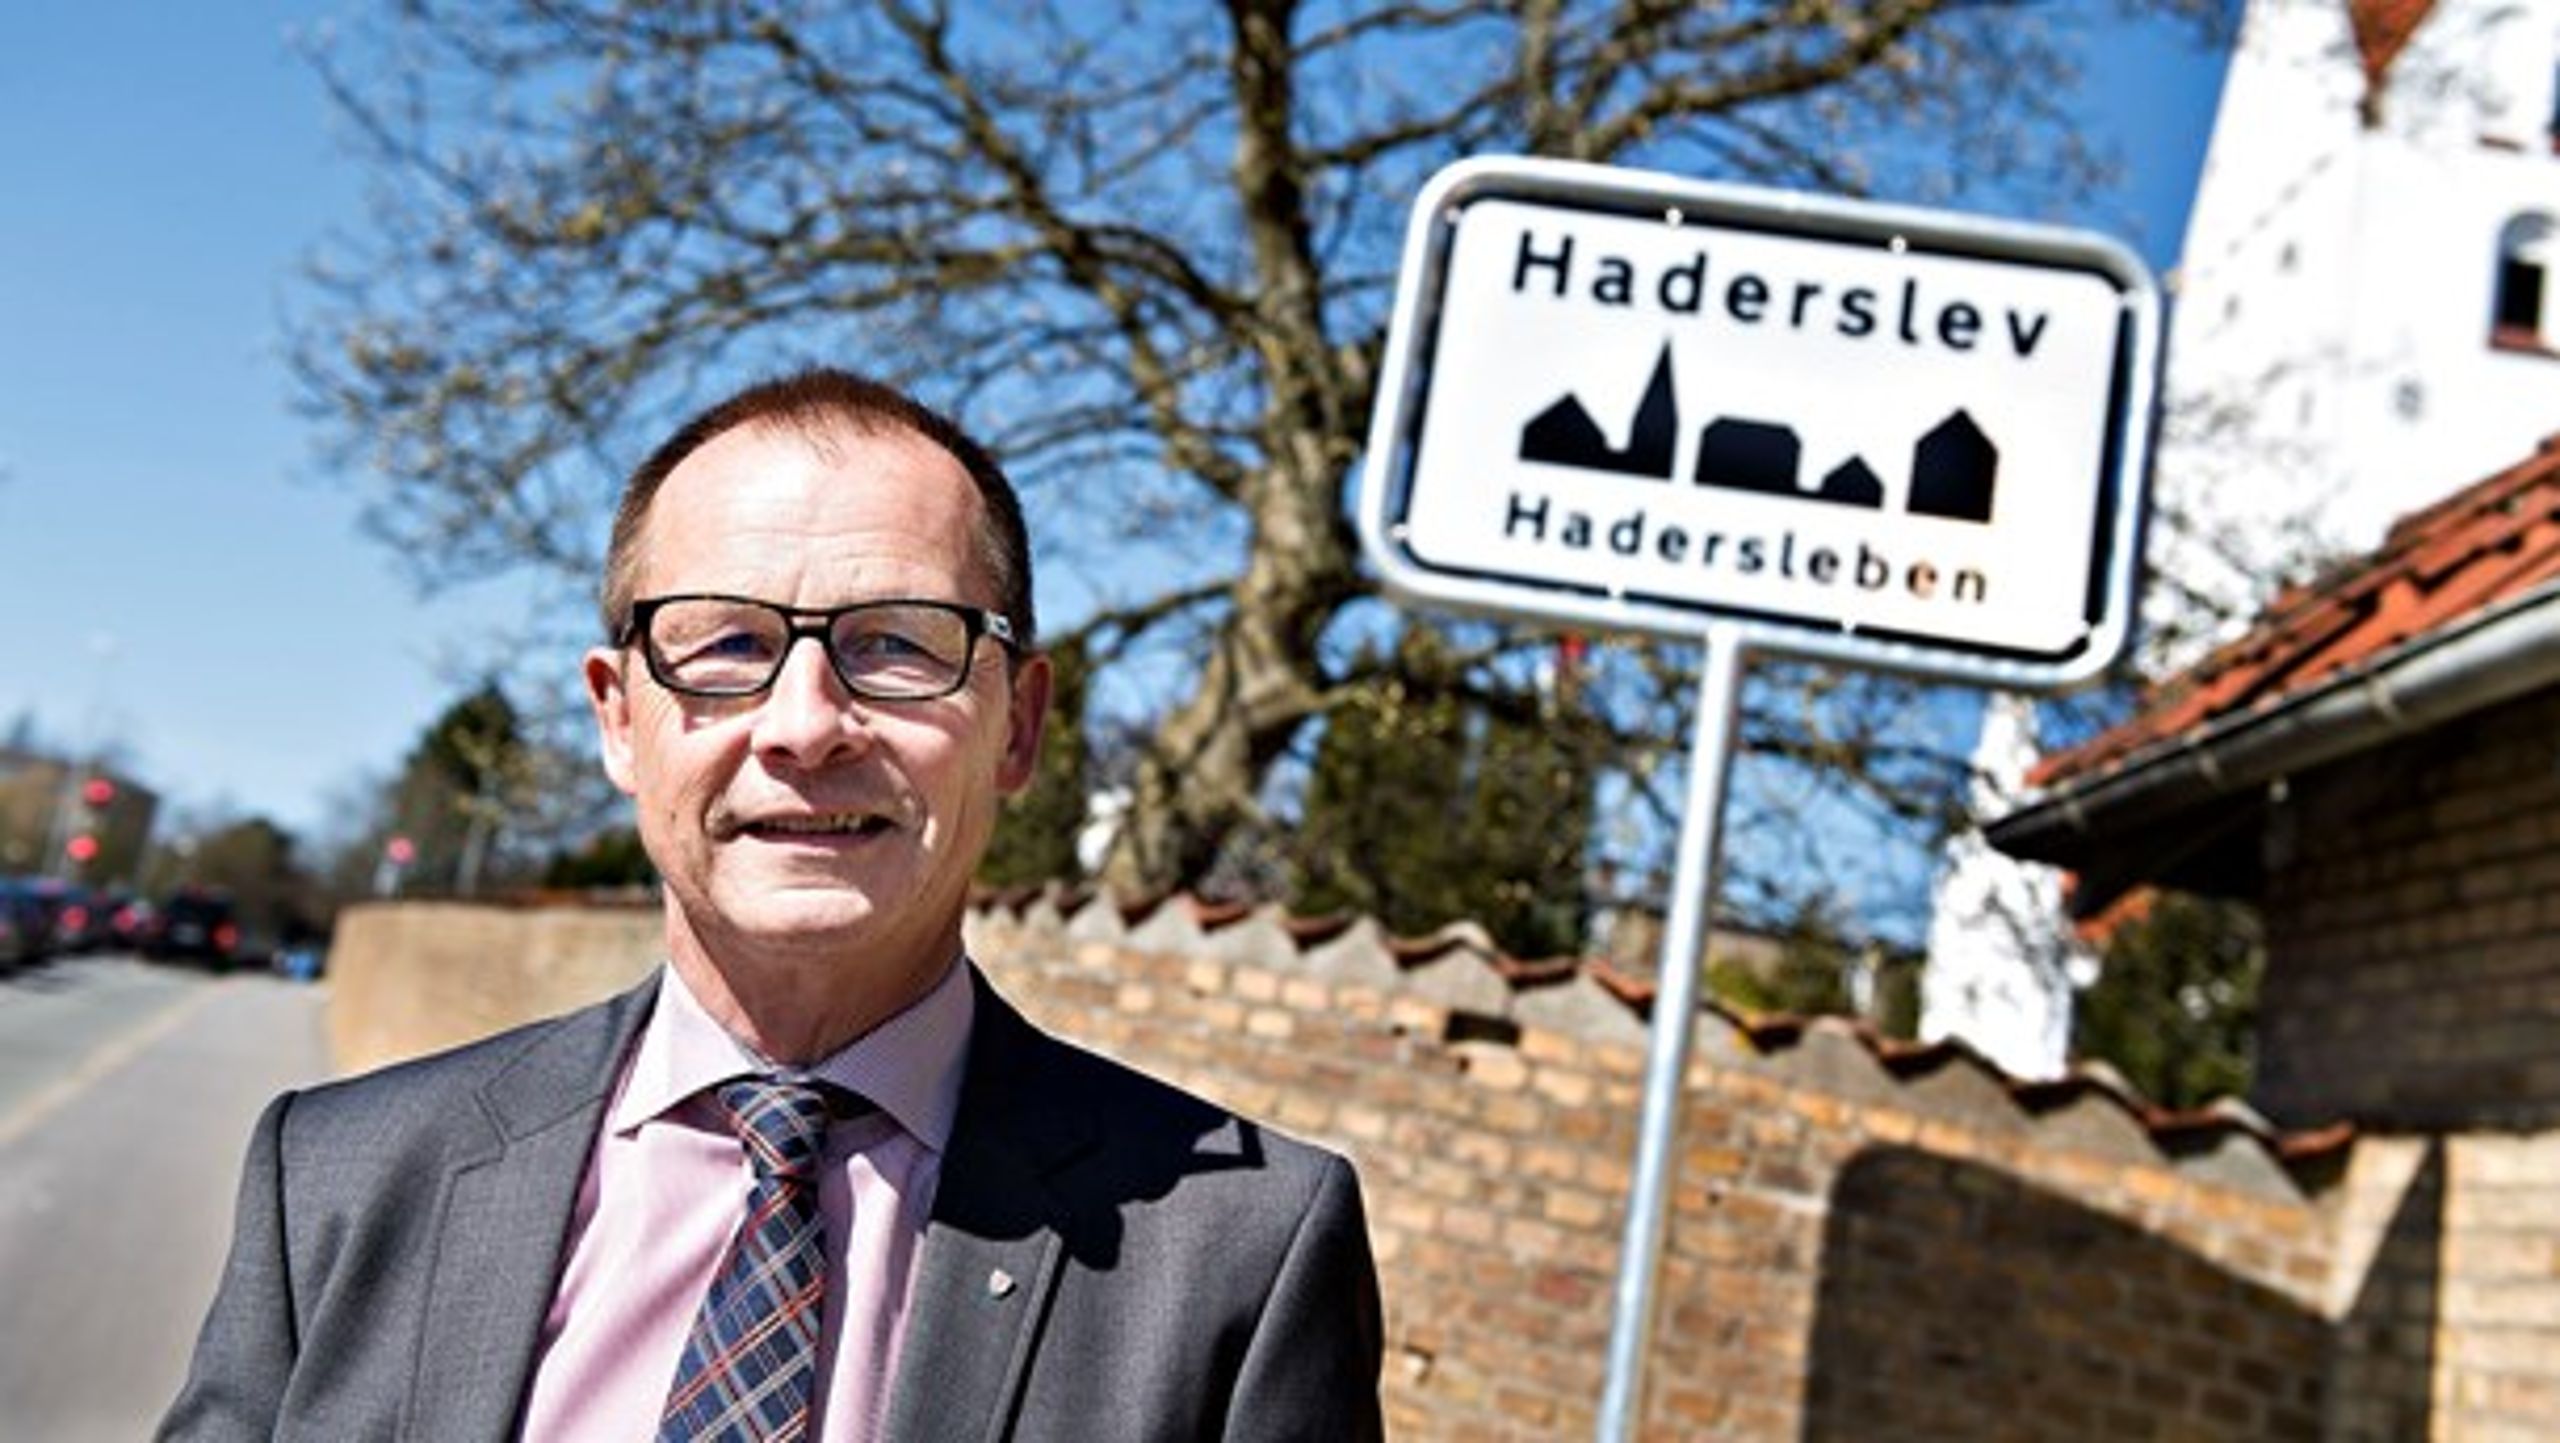 Efter 30 år i lokalpolitik har Haderslevs borgmester af flere omgange, Venstres H.P. Geil, valgt ikke at genopstille igen. Flere af Venstres jyske borgmesterveteraner følger trop.